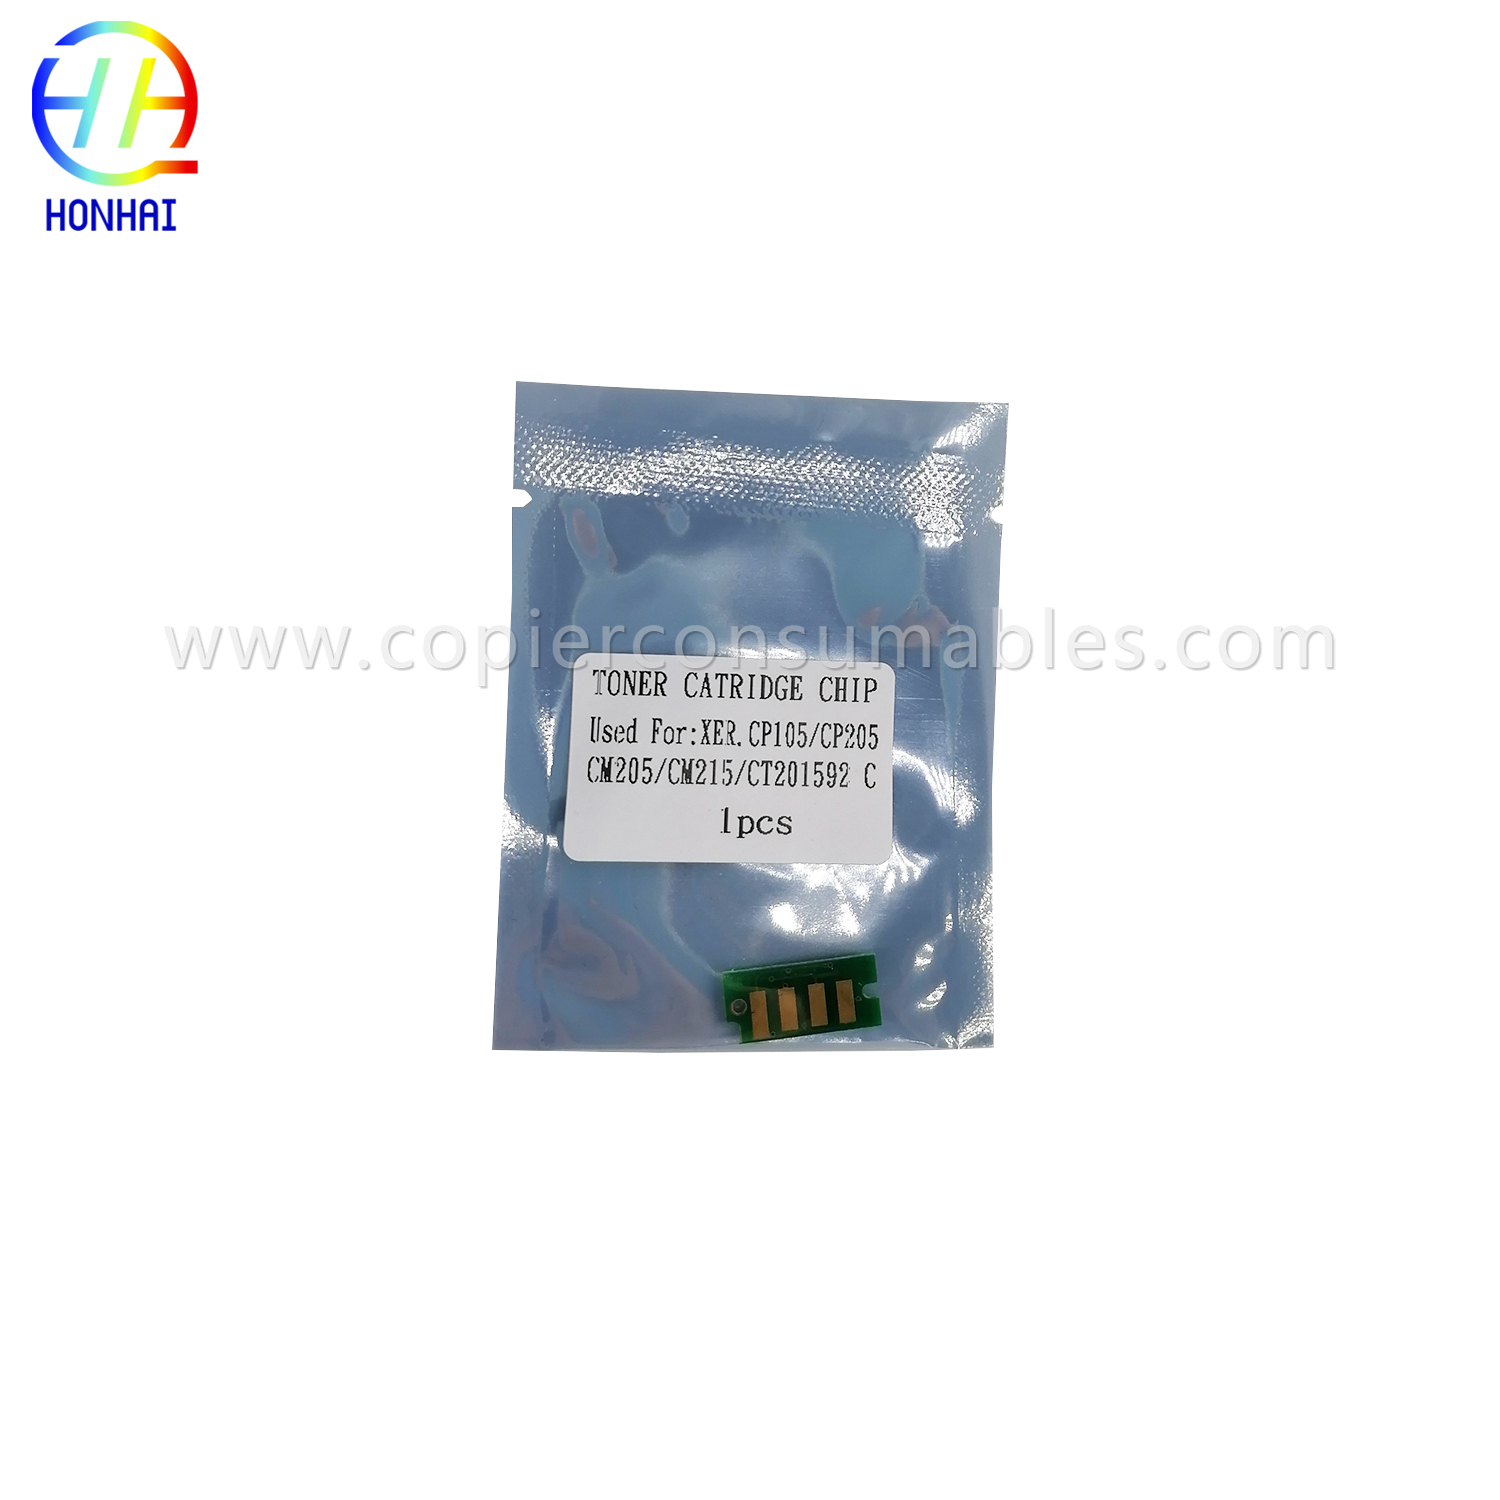 Toner Cartridge Chip for OKI C831n 831dn 44844525 44844527 44844526 44844528